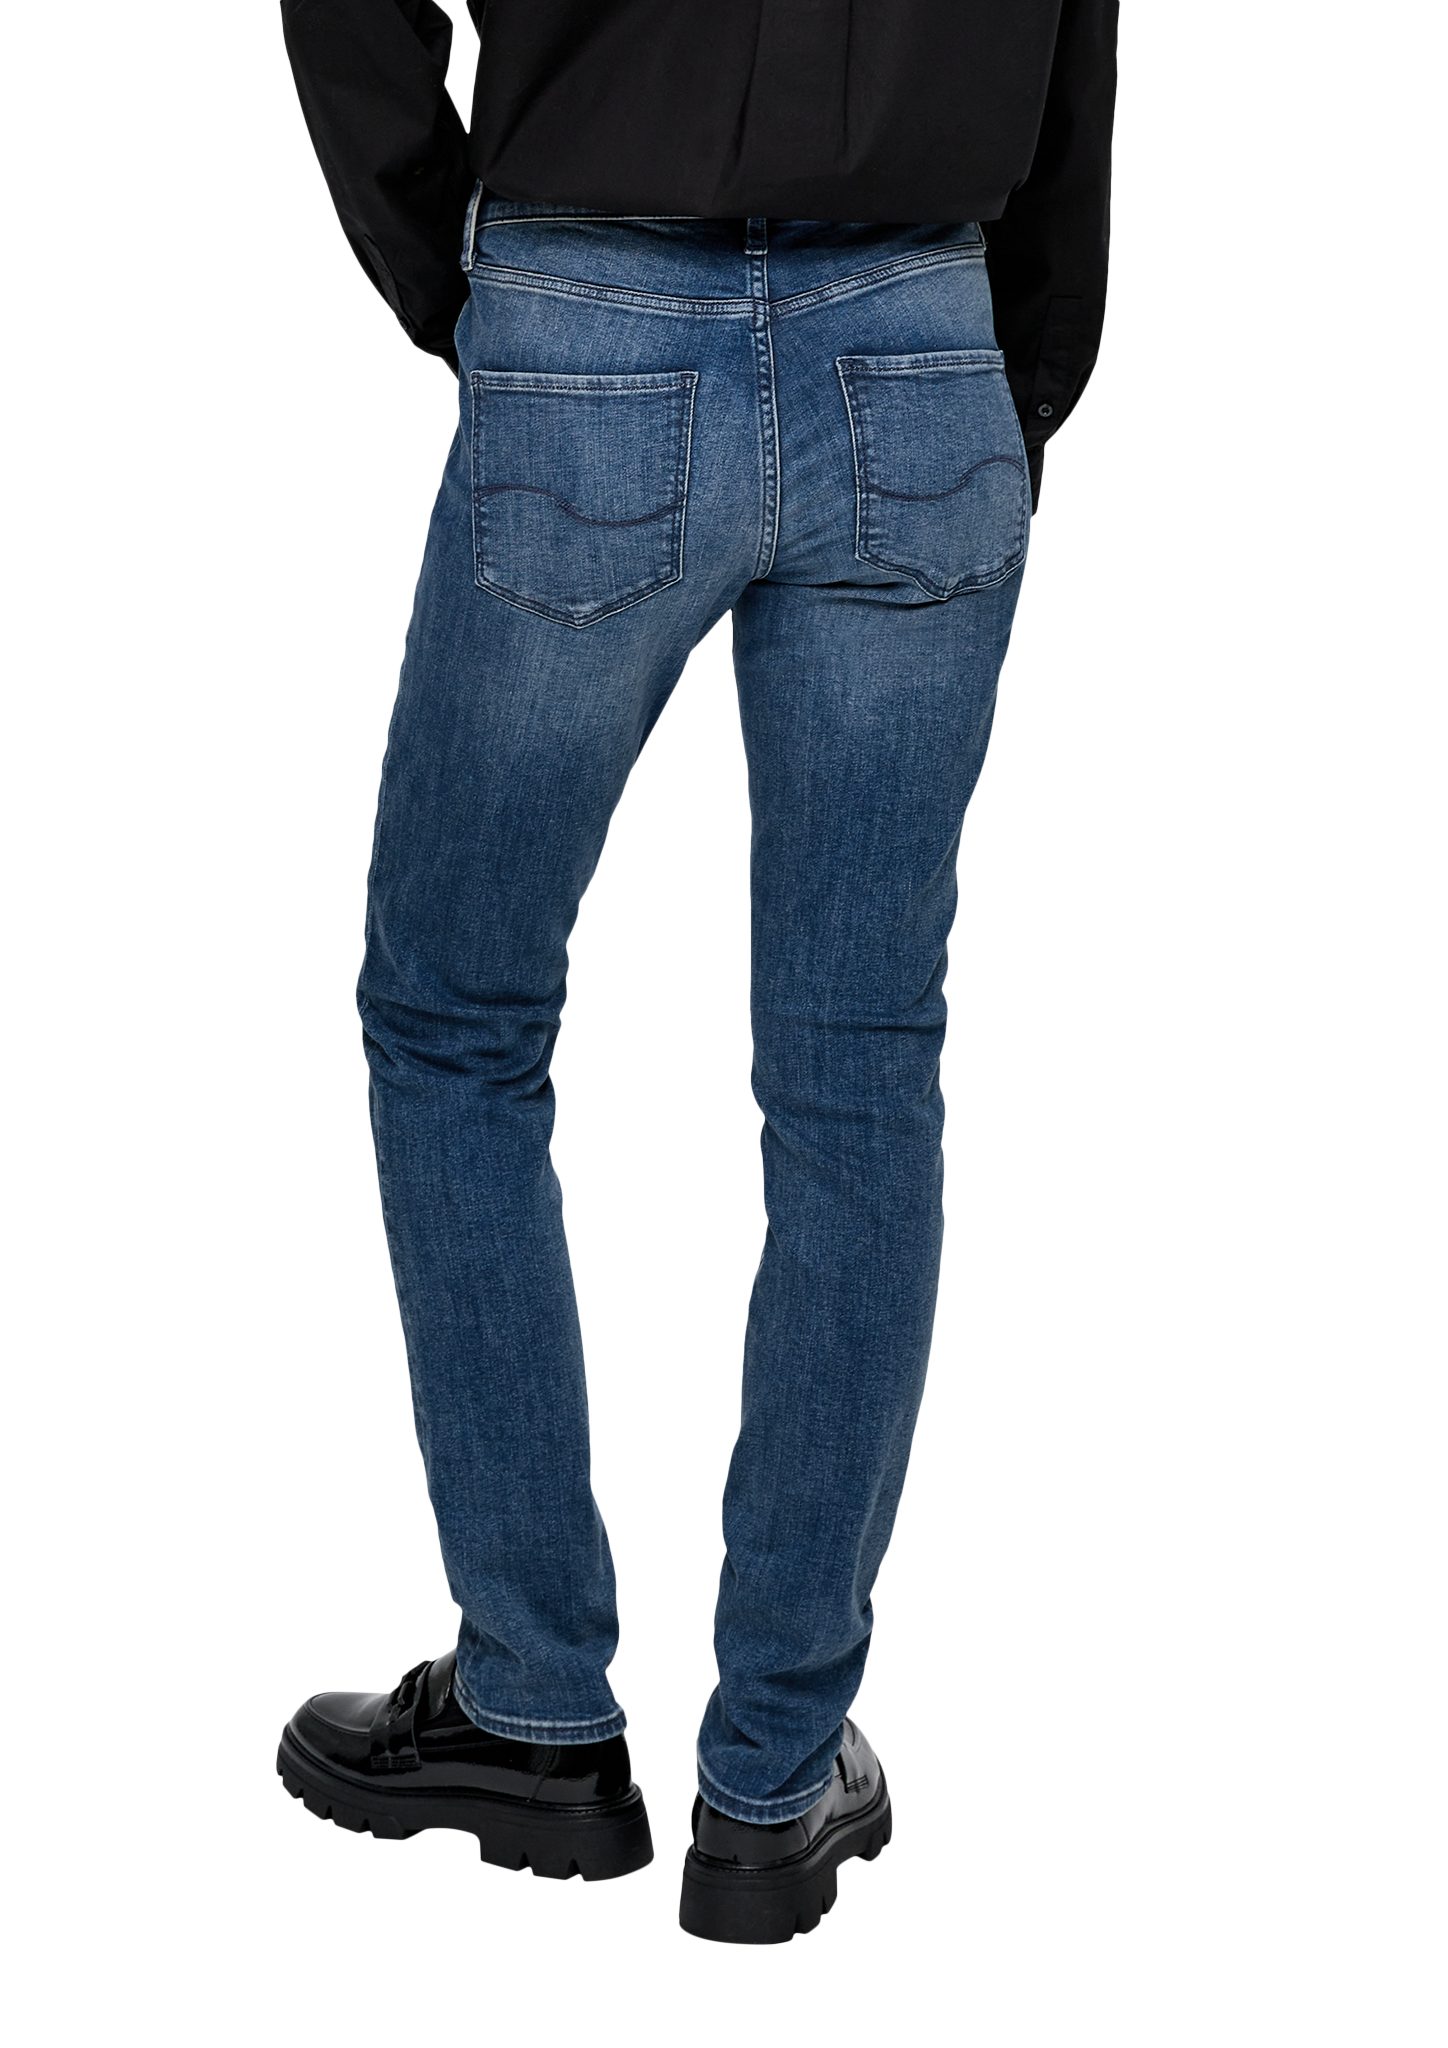 Label-Patch QS / Stoffhose Slim / Catie Leg Jeans Mid Rise blau Fit Slim /